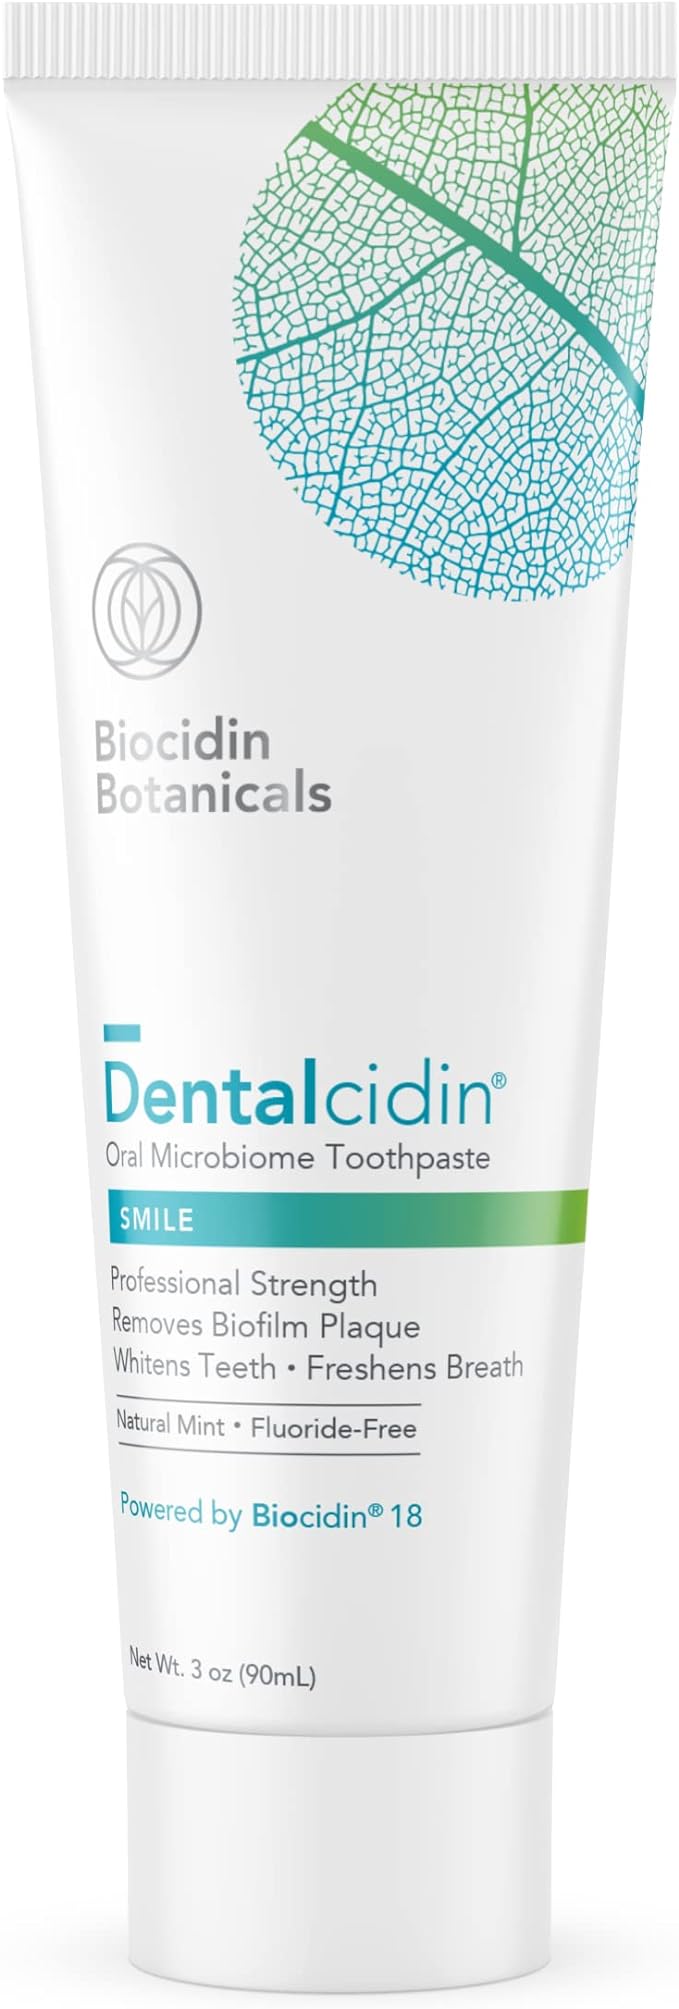 Biocidin DentalCidin Smile Oral Microbiome Toothpaste 3 oz